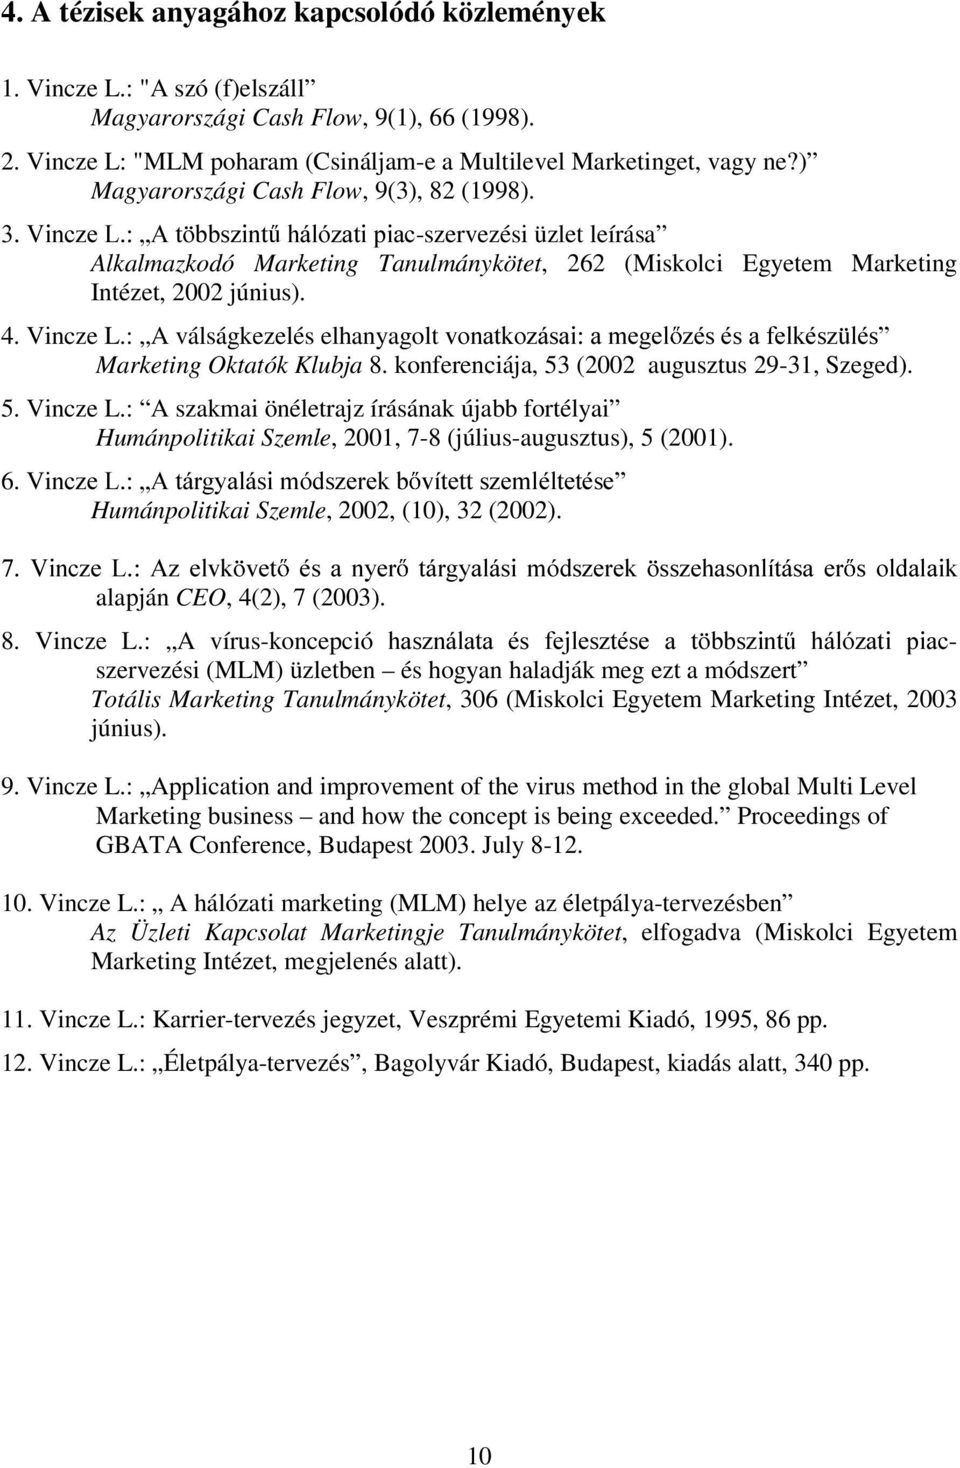 Vincze L.: A válságkezelés elhanyagolt YRQDWNR]iVDLDPHJHO ]pvpvdihonpv] OpV Marketing Oktatók Klubja 8. konferenciája, 53 (2002 augusztus 29-31, Szeged). 5. Vincze L.